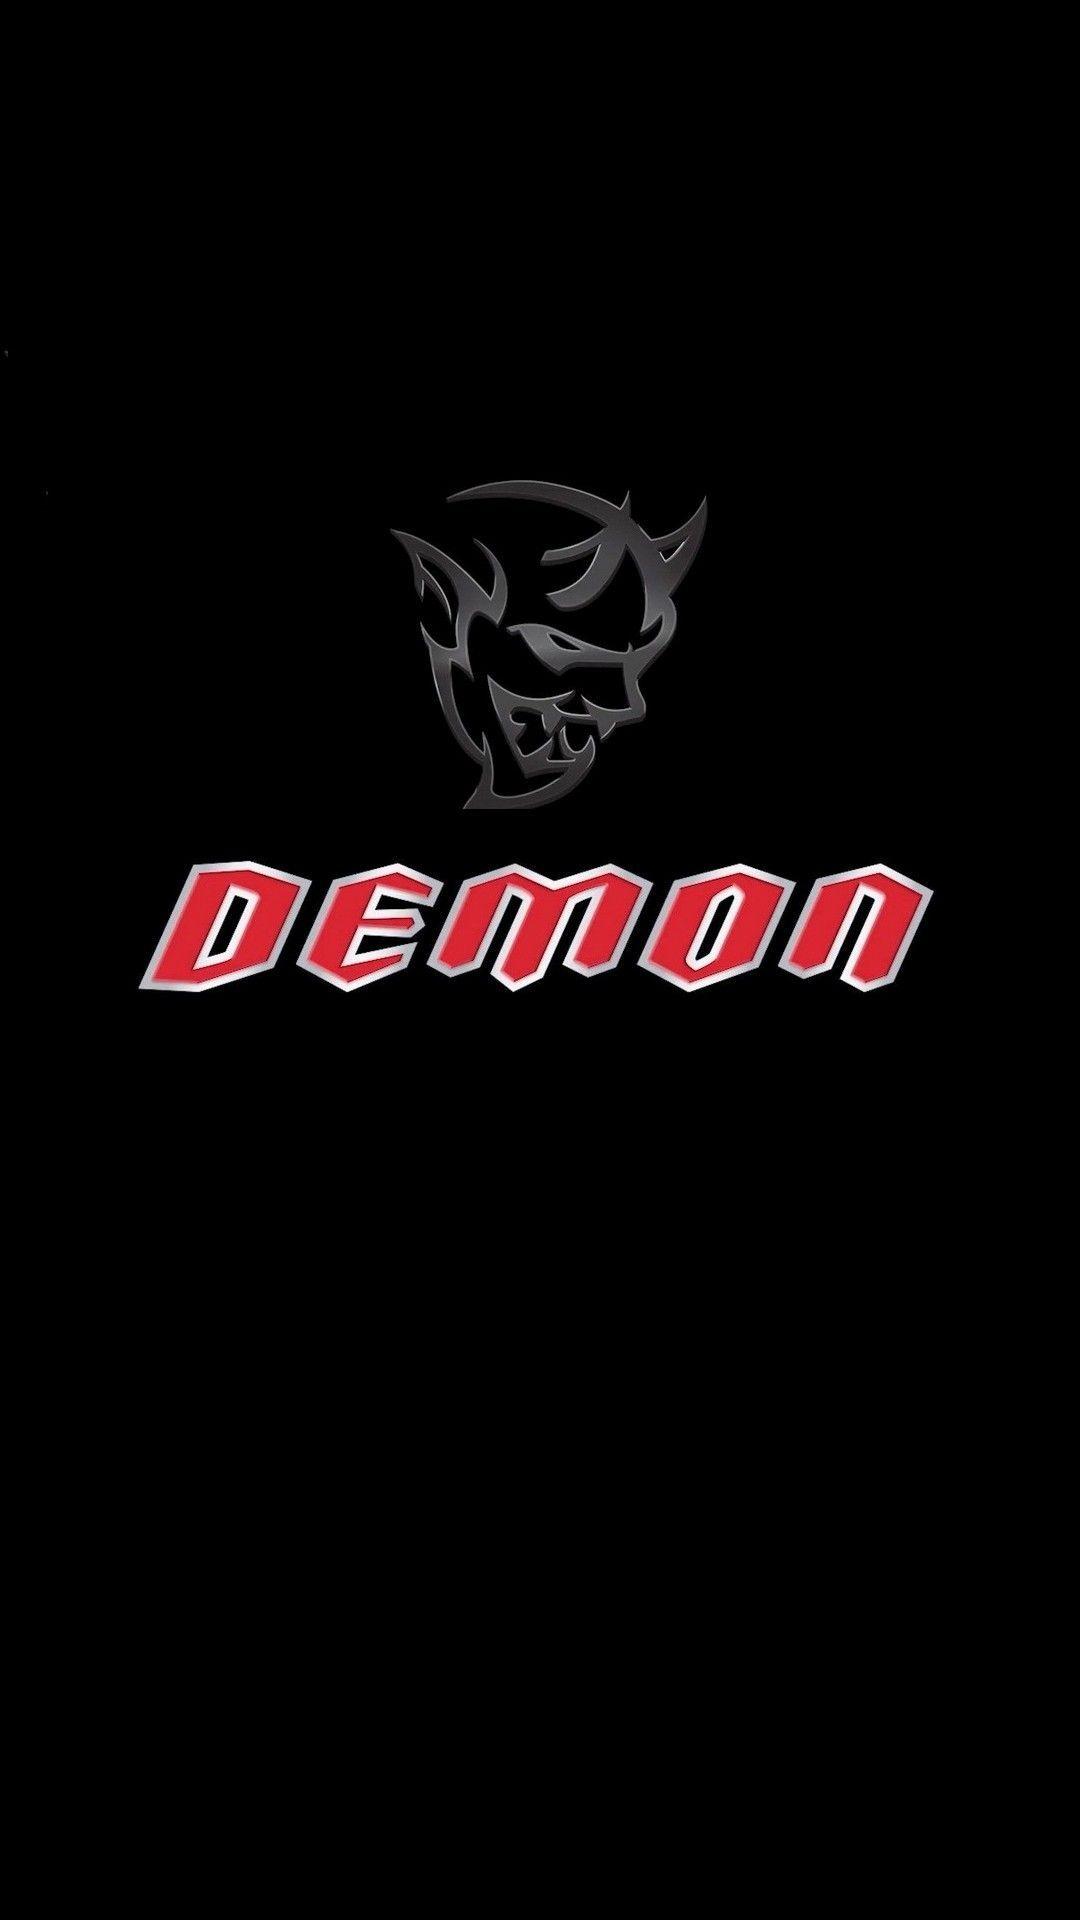 Dodge Demon Logo iPhone Wallpaper iPhone Wallpaper